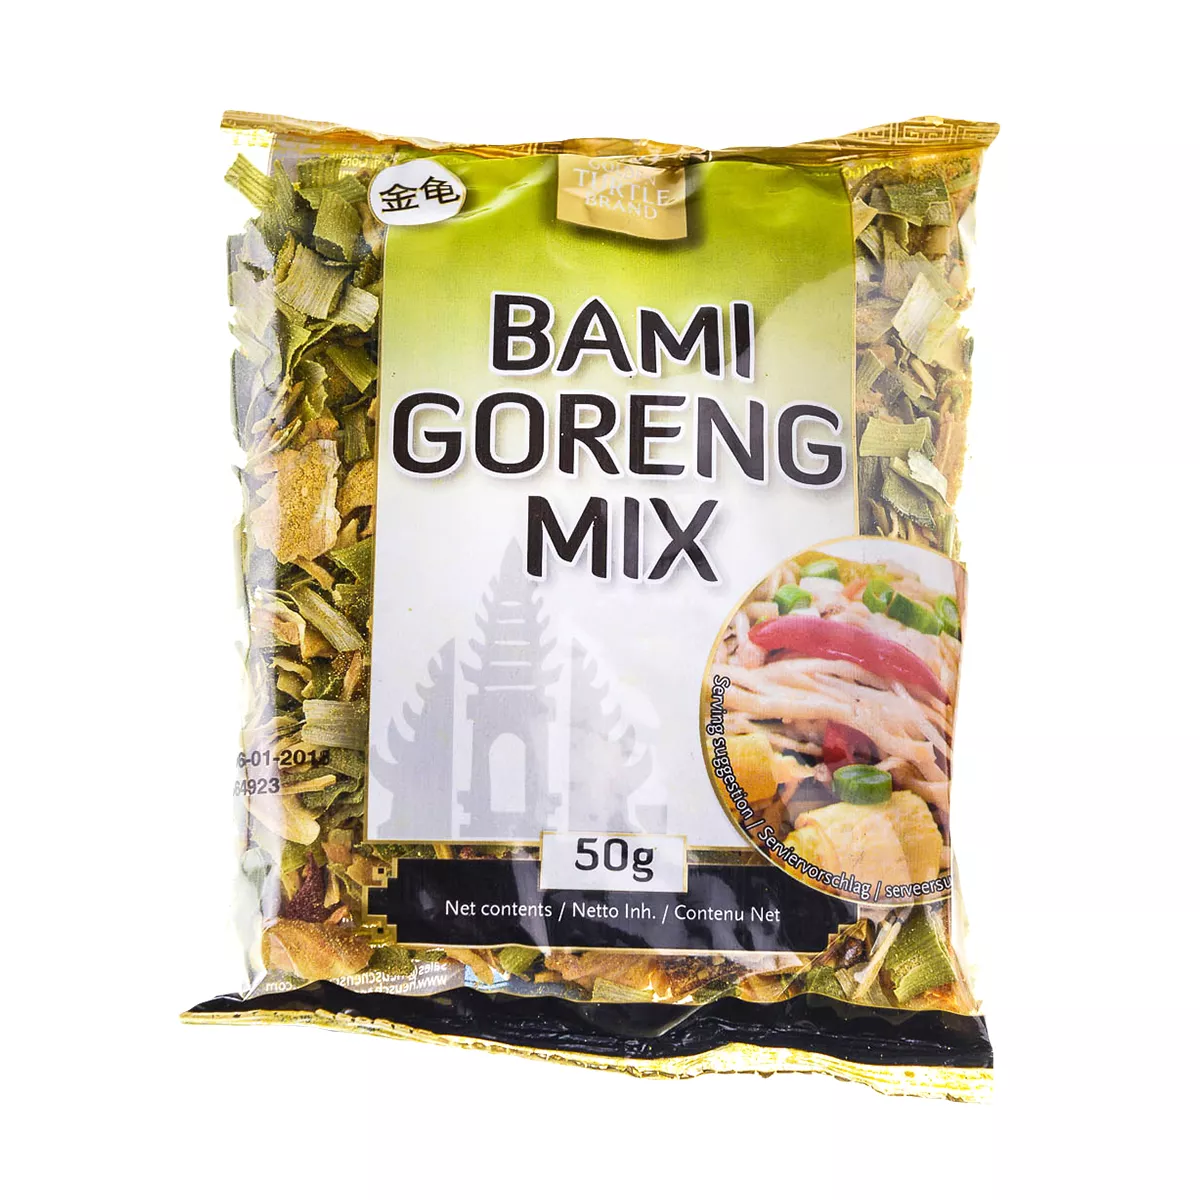 Mix Bami Goreng GT 50g, [],asianfood.ro